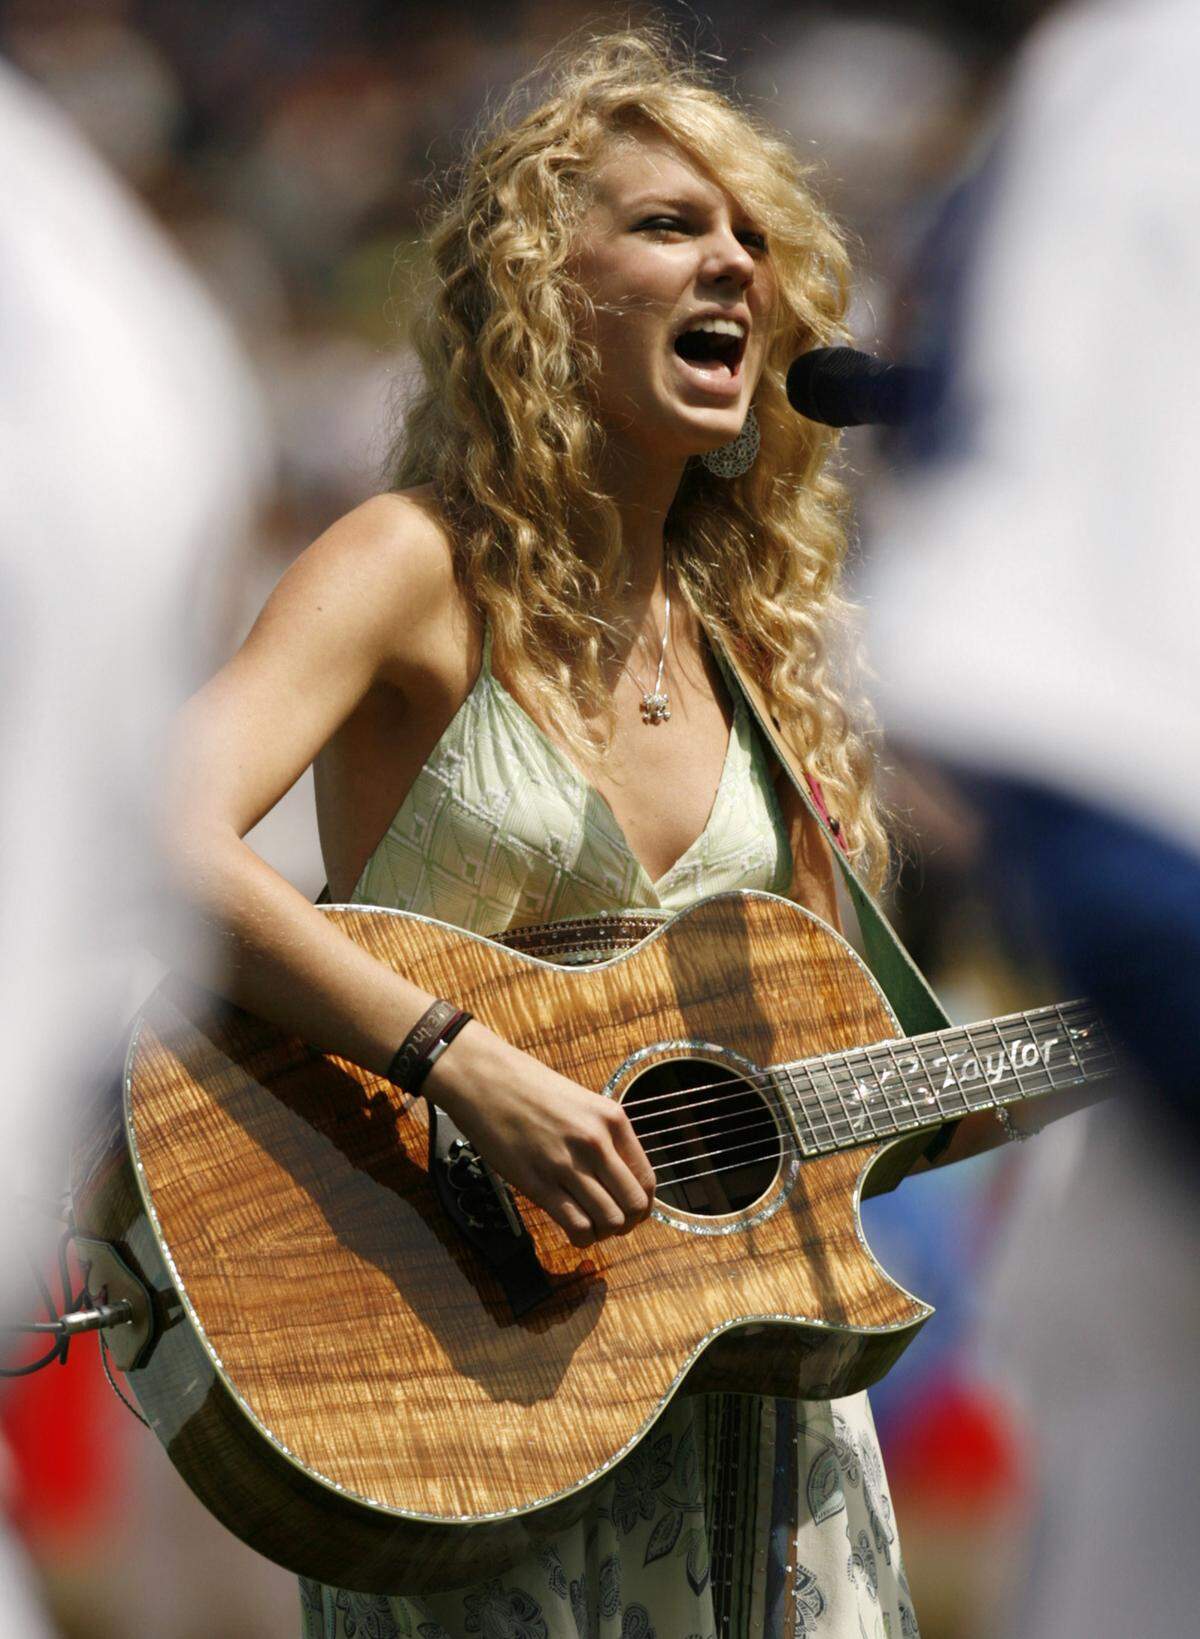 Mit ihren langen blonden Locken, zarten Ärmchen und professionellem Lächeln ist Taylor Swift ein echtes All-American-Girl.